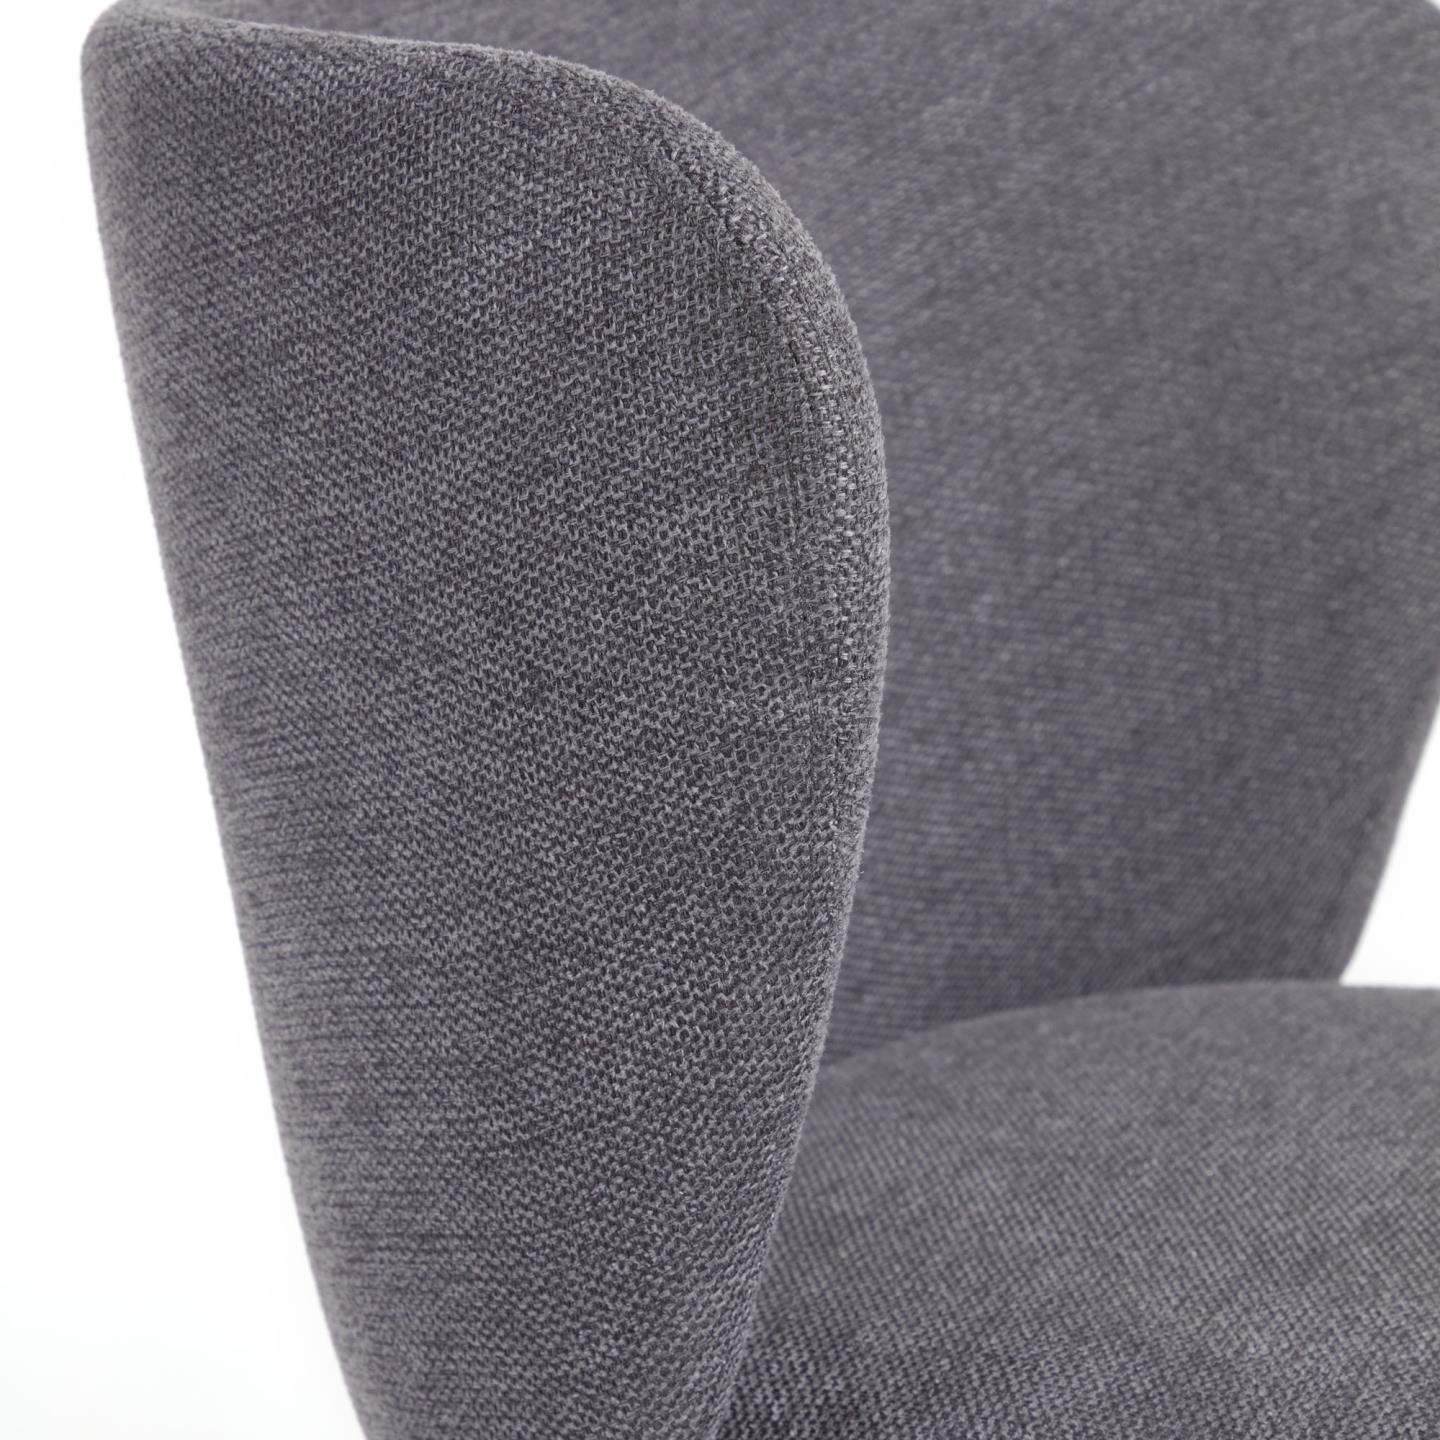 Krzesło w tkaninie szenilowej CISELIA ciemnoszary La Forma    Eye on Design